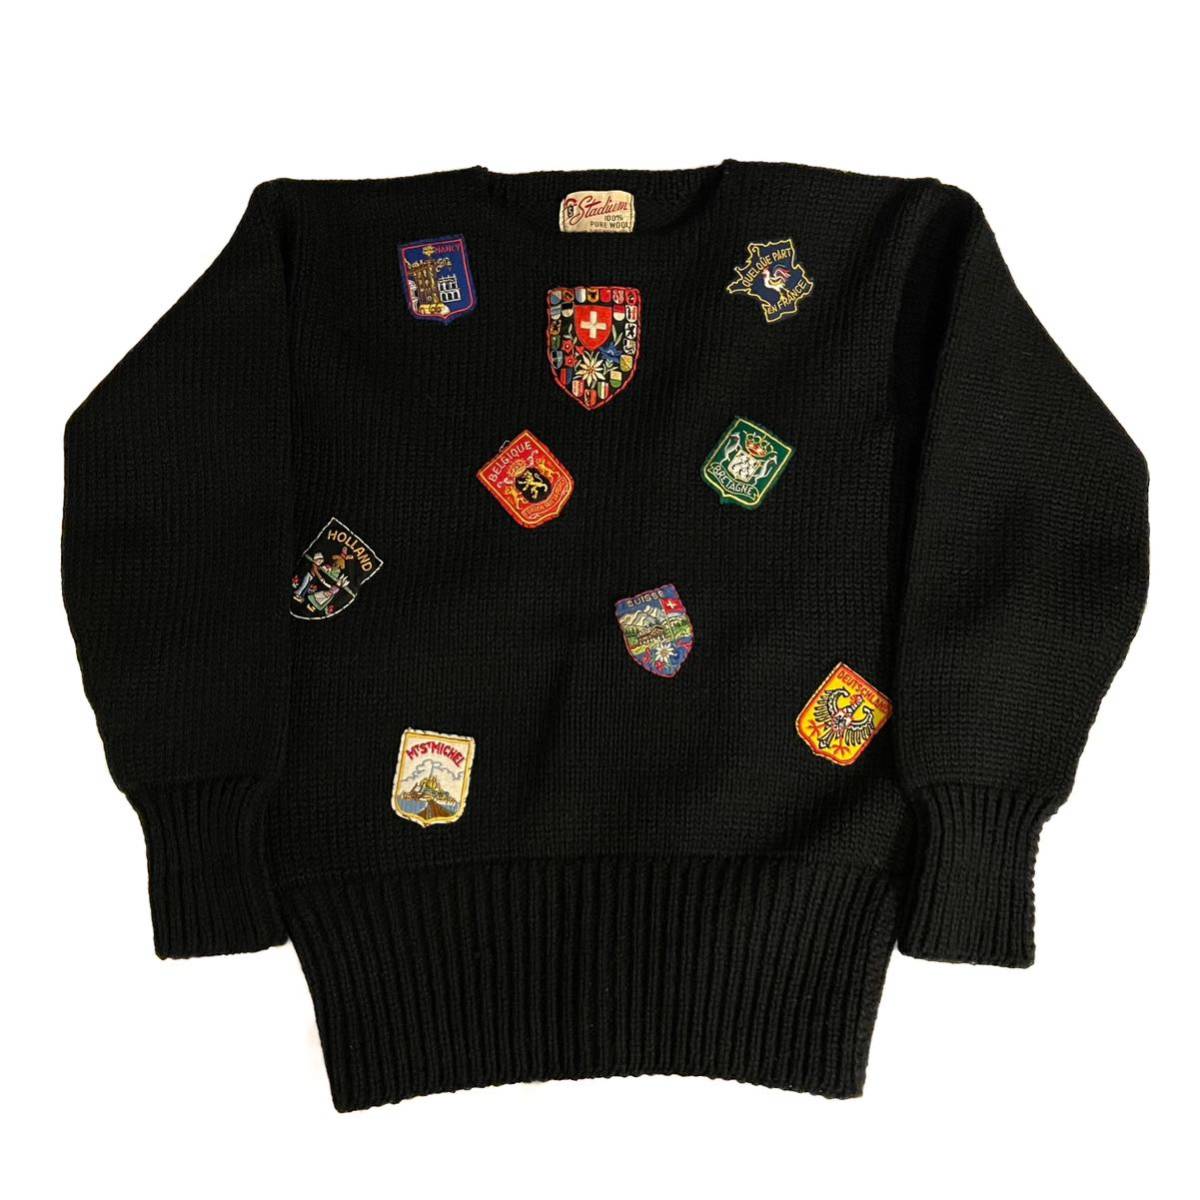 希少 40s~ Vintage Black Wool School Knit ニット Vネック ヴィンテージ ビンテージ スウェット セーター レタード ローゲージ カレッジ